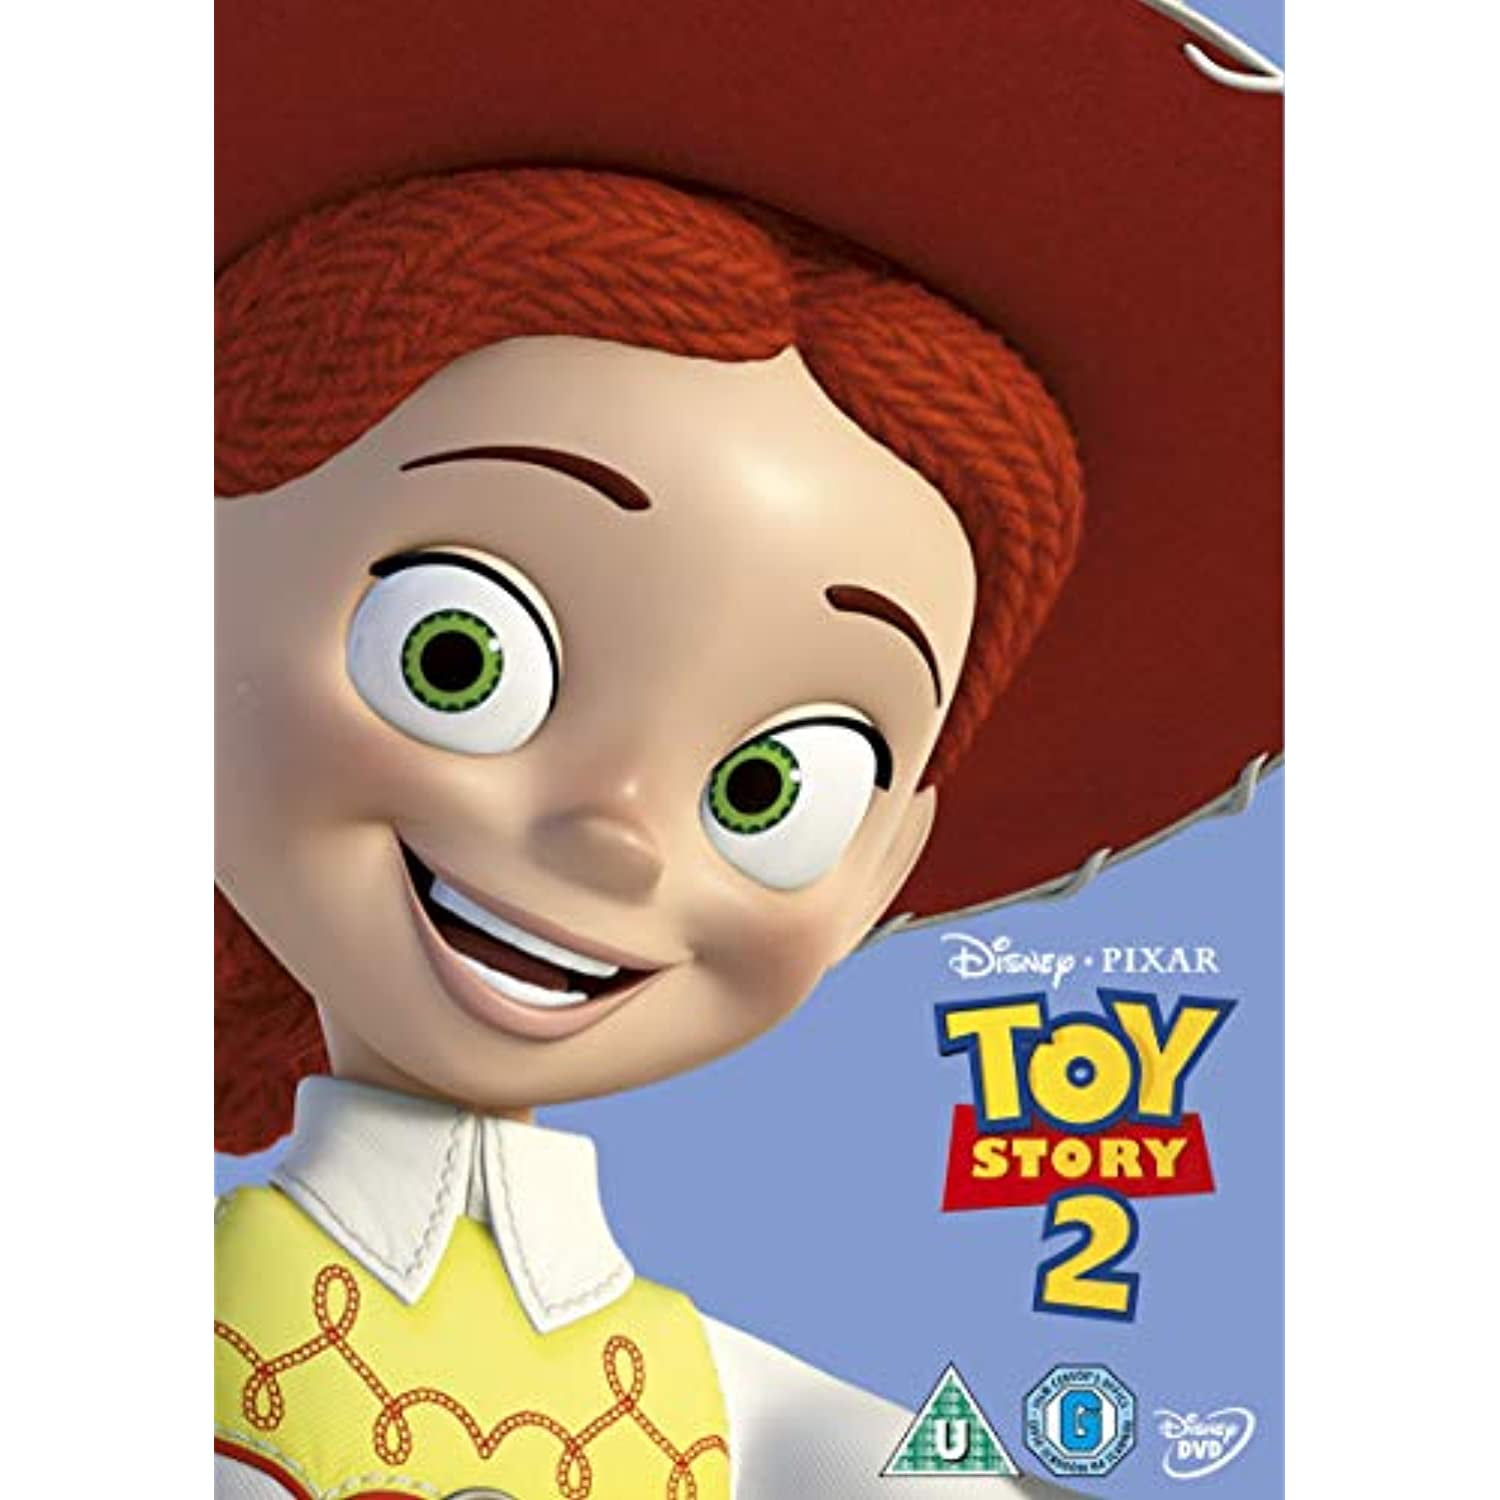 История игрушек дисней. Toy story 2 1999 Blu ray. Toy story 1995 Blu ray. Toy story DVD. История игрушек 2 (DVD).